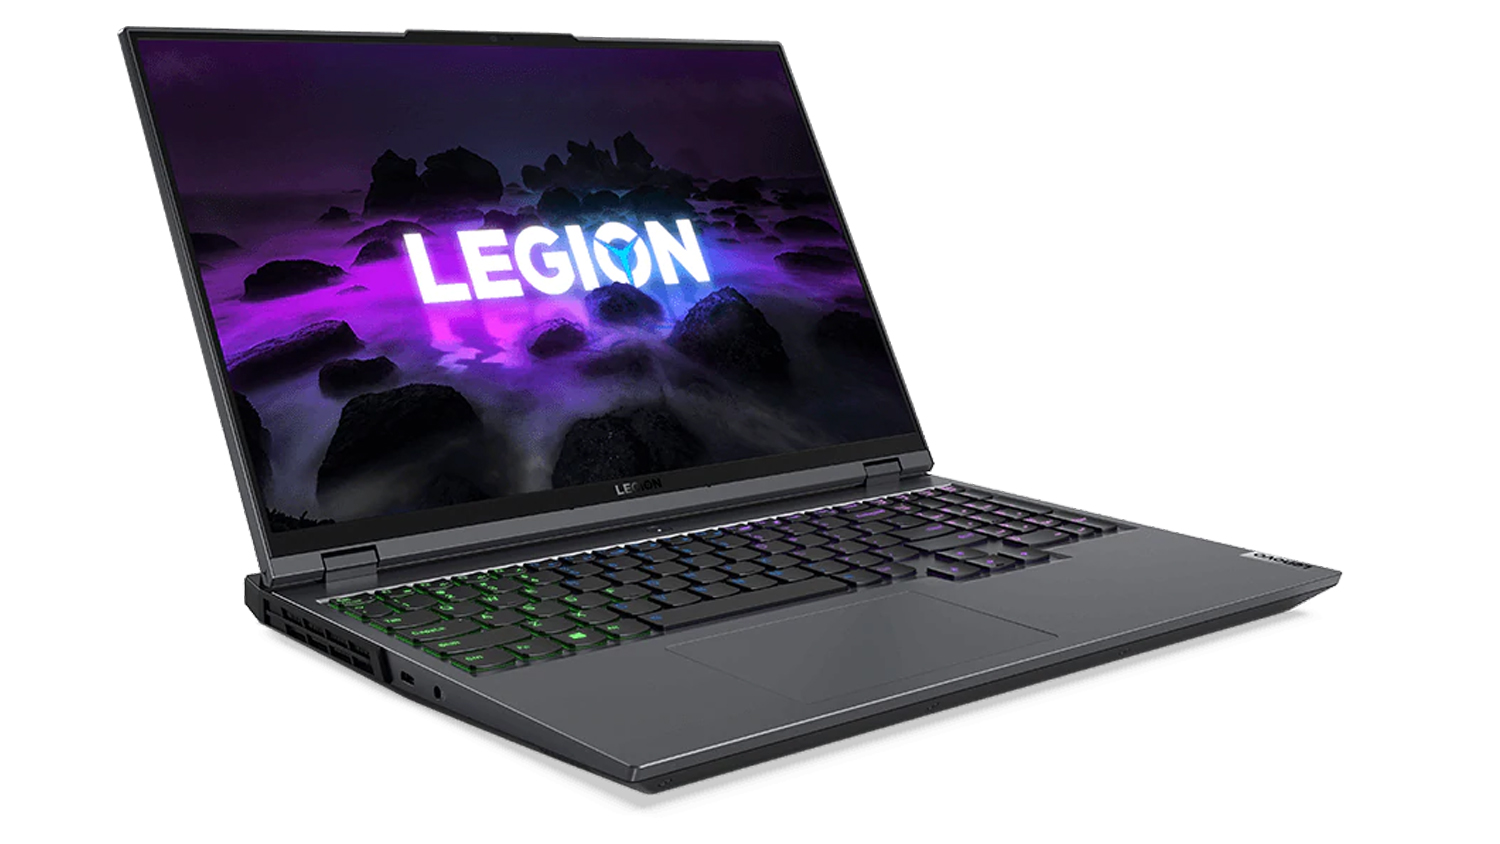 Lenovo Legion 5 Pro على خلفية بيضاء. الكمبيوتر المحمول مفتوح، وهناك خلفية ملونة على الشاشة مع شعار Legion وما يشبه الصخور السوداء المحيطة به.